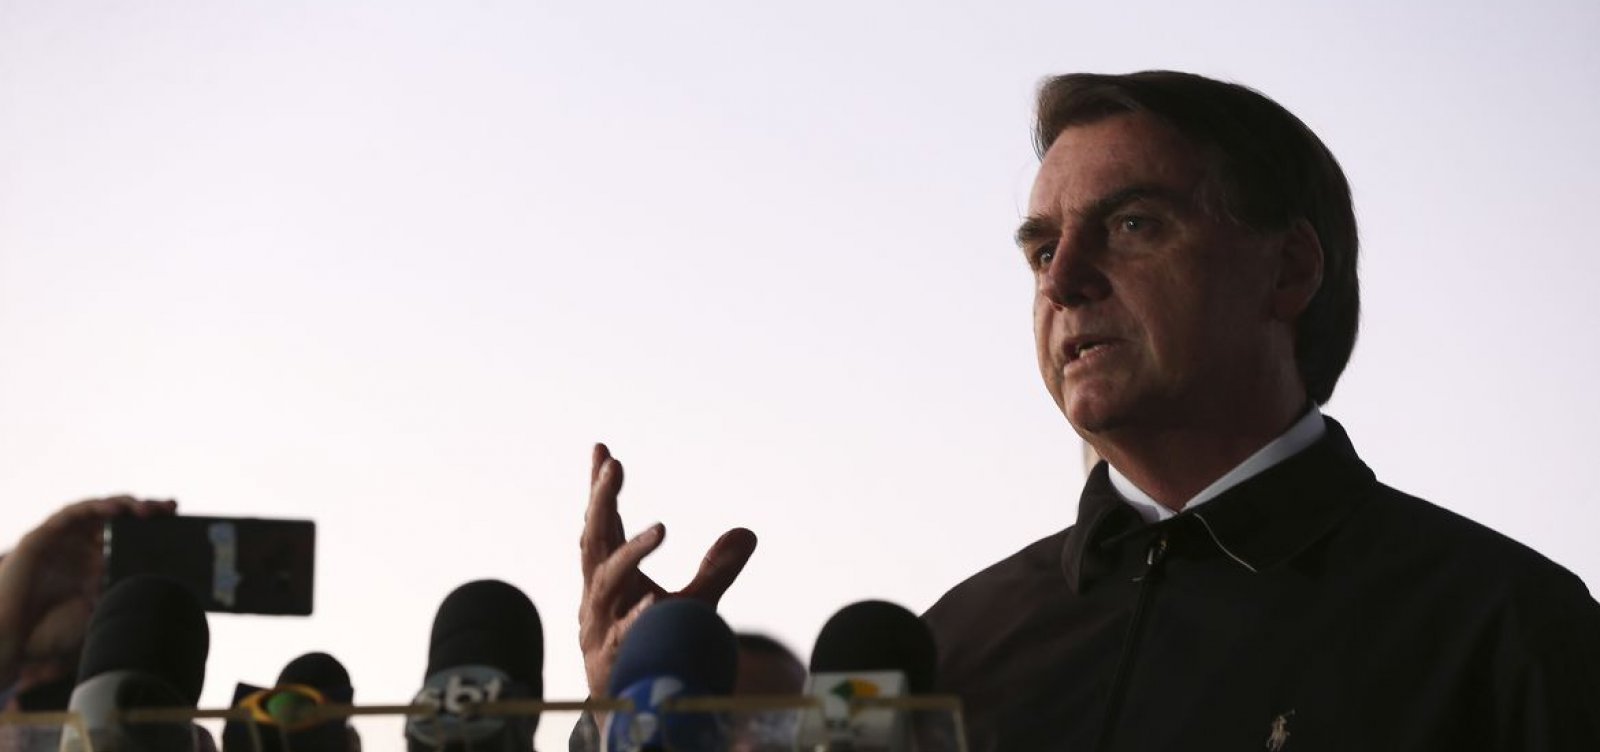 Bolsonaro defende privatizações e responsabilidade fiscal do Estado